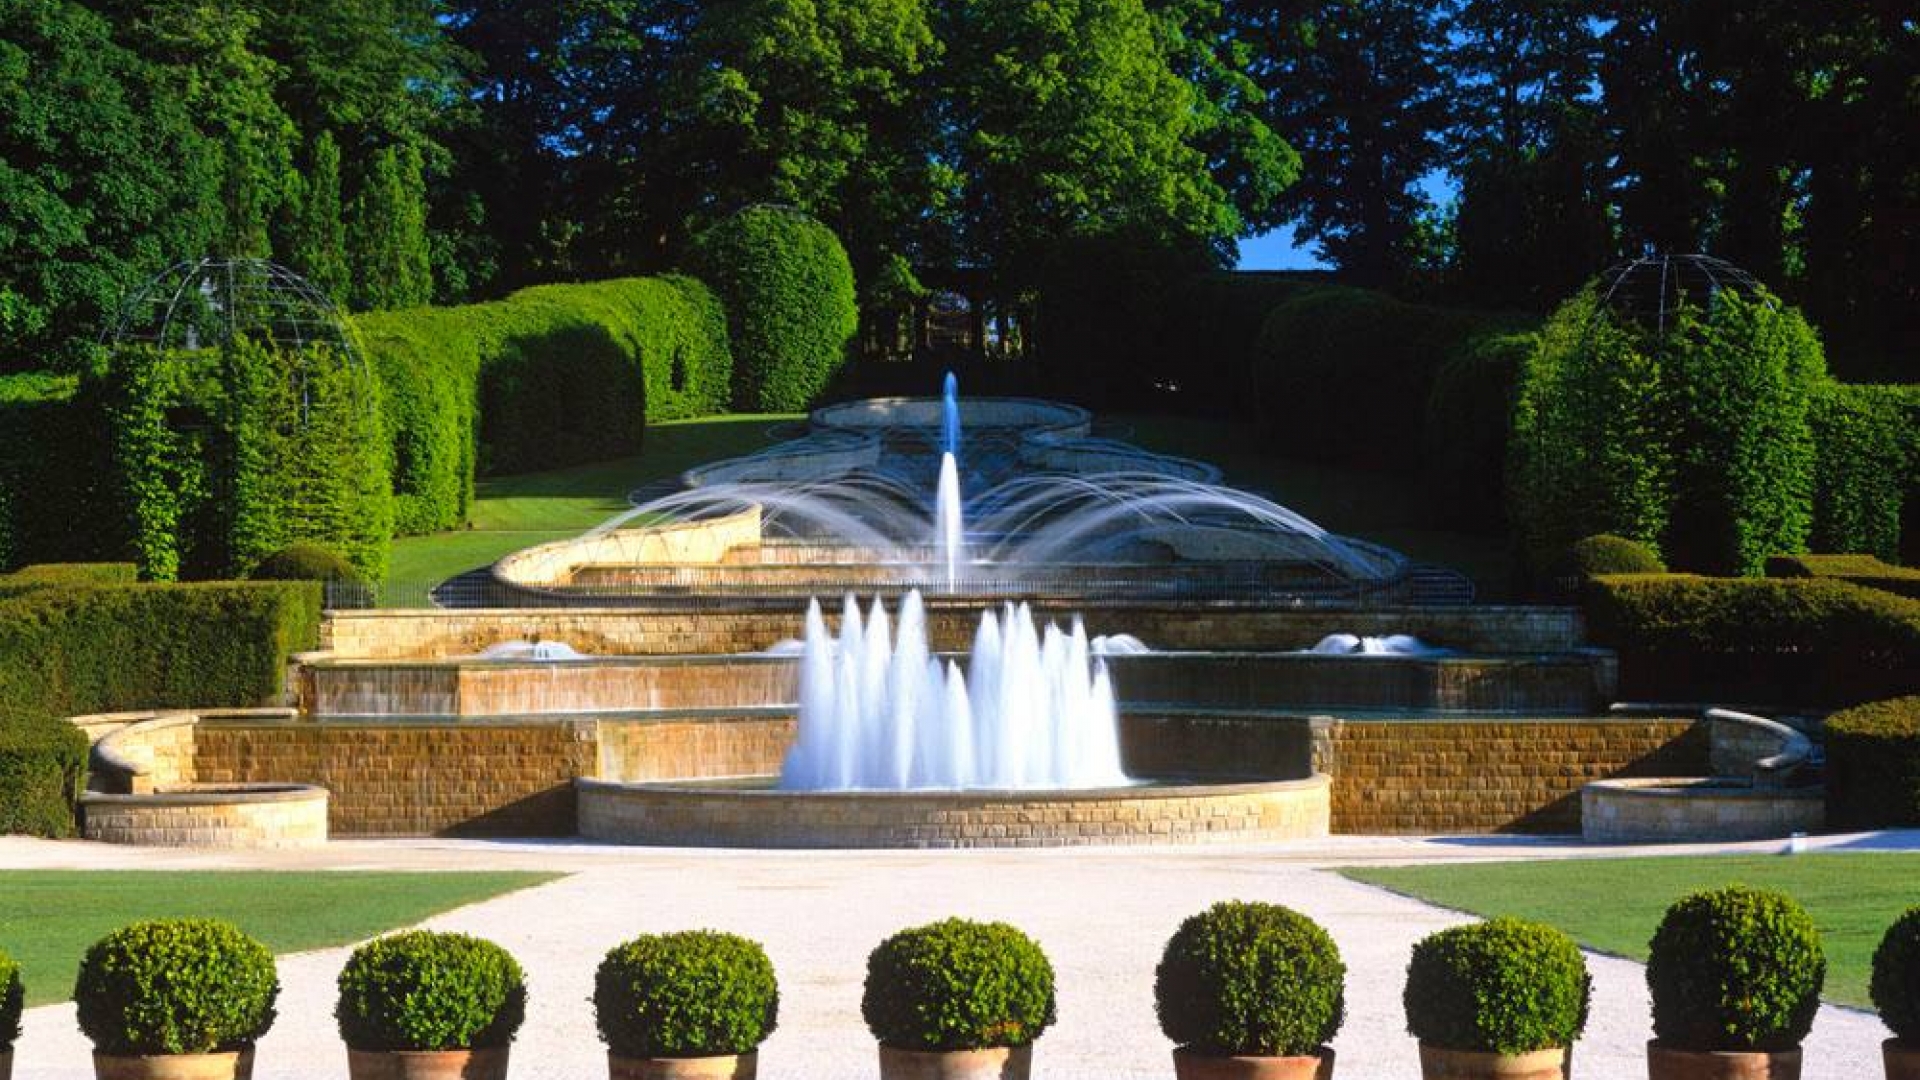 The Alnwick Garden Fountain